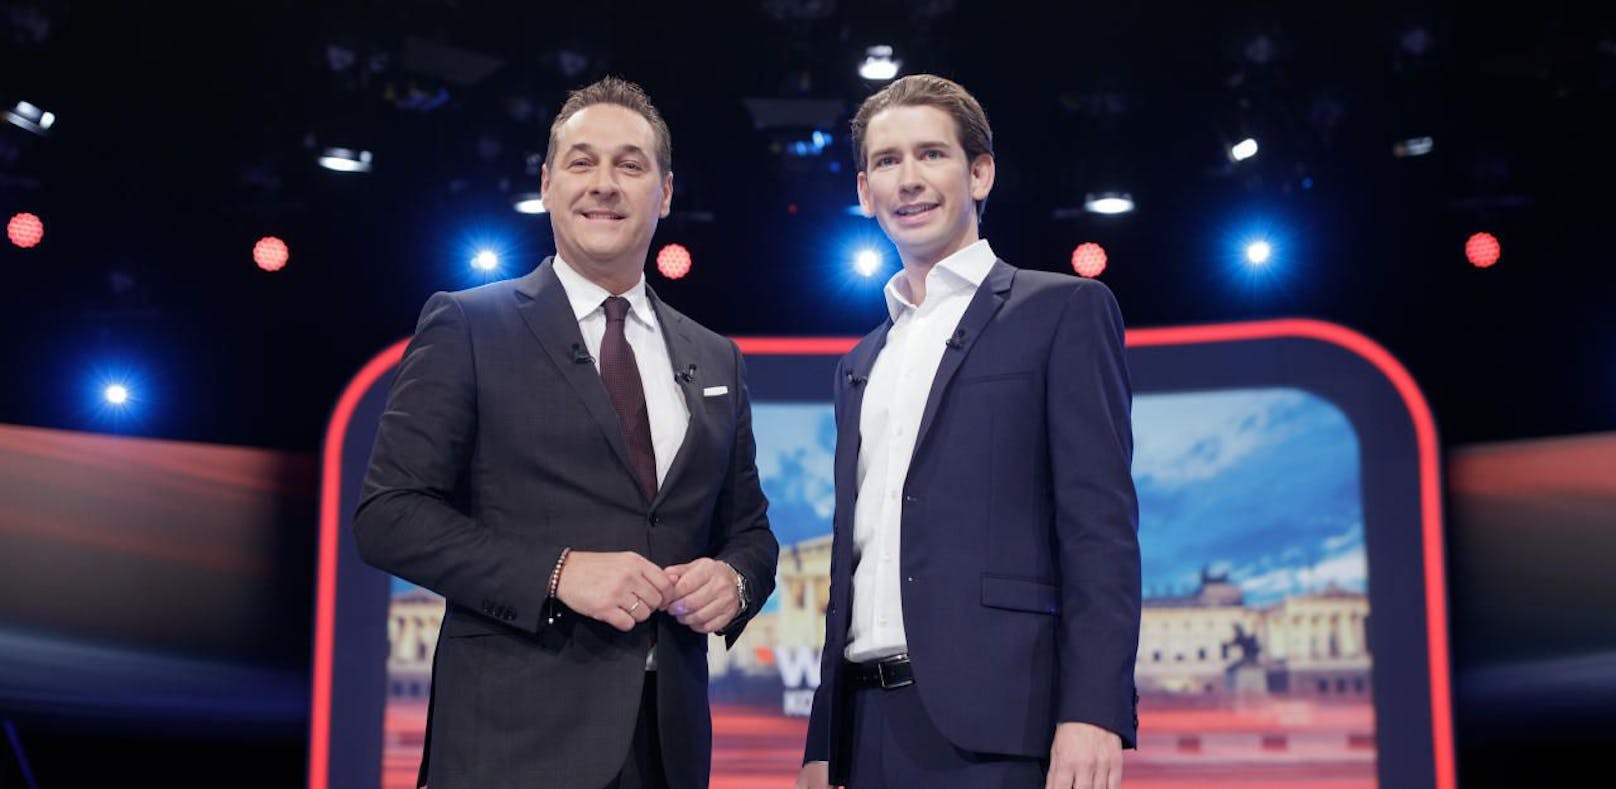 Erhalten in Zukunft mehr Parteienförderung: Heinz-Christian Straches FPÖ und Sebastian Kurz' ÖVP.